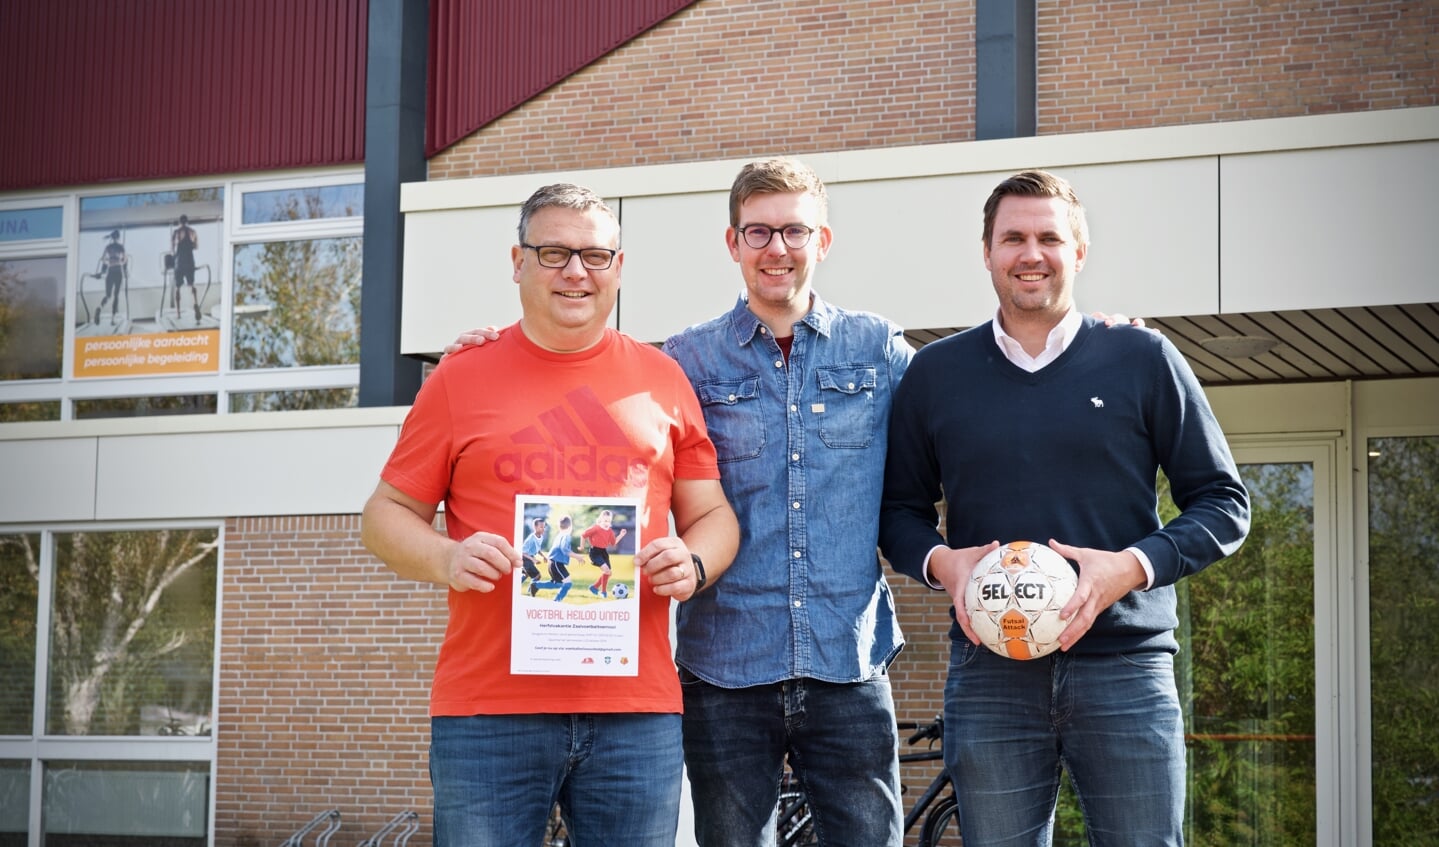 De mede-initiatiefnemers van het zaalvoetbaltoernooi op 23 oktober:  Jeroen Bonhoff, Koen de Jong en Stephan de Jong.